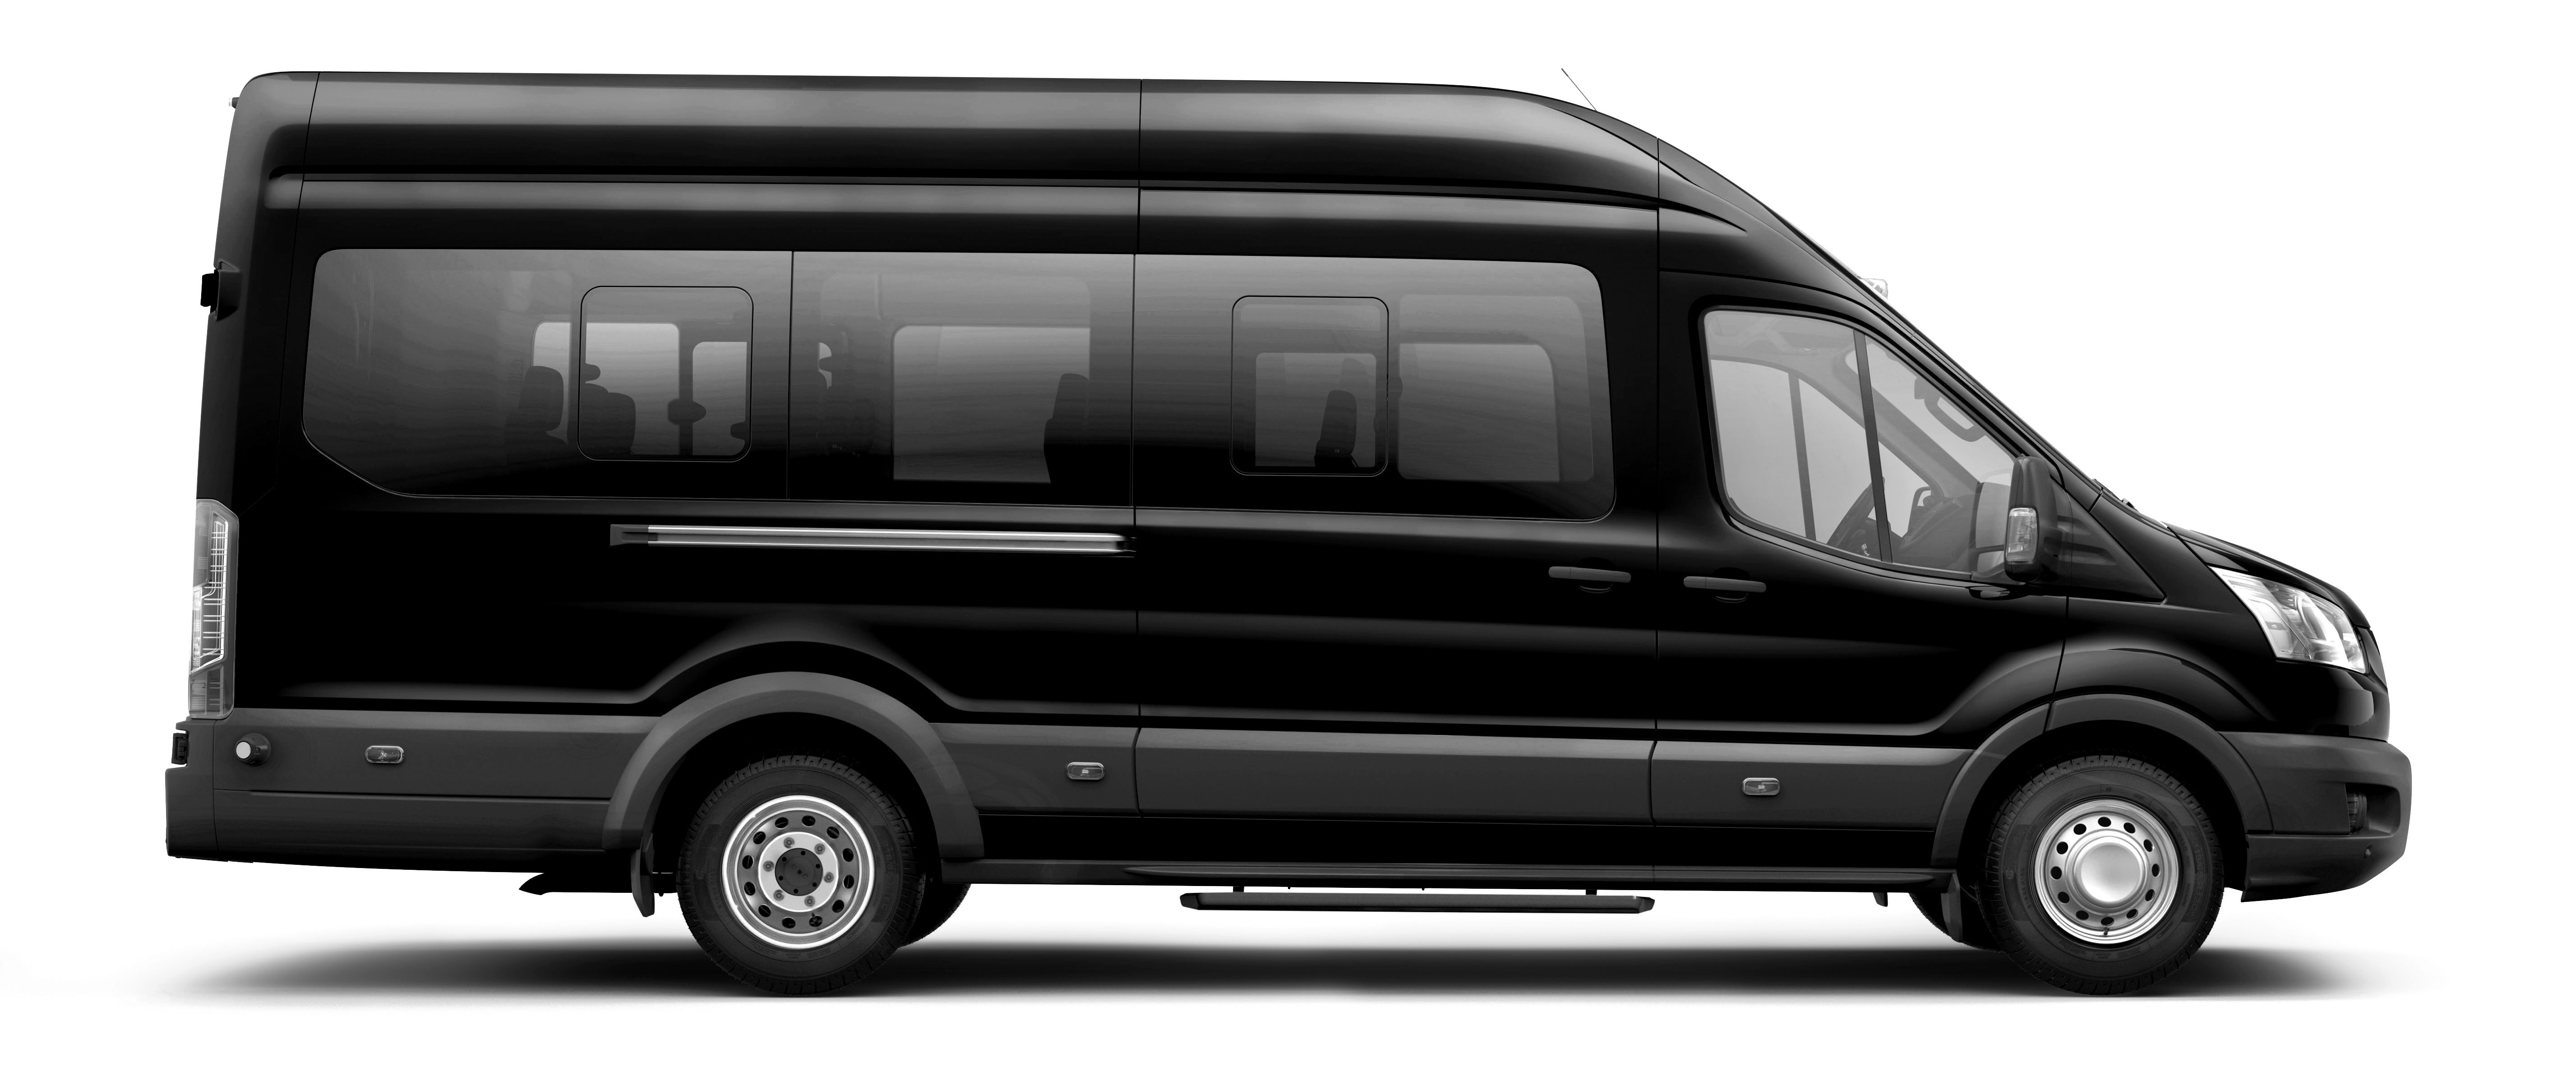 Чёрный Ford Transit микроавтобус